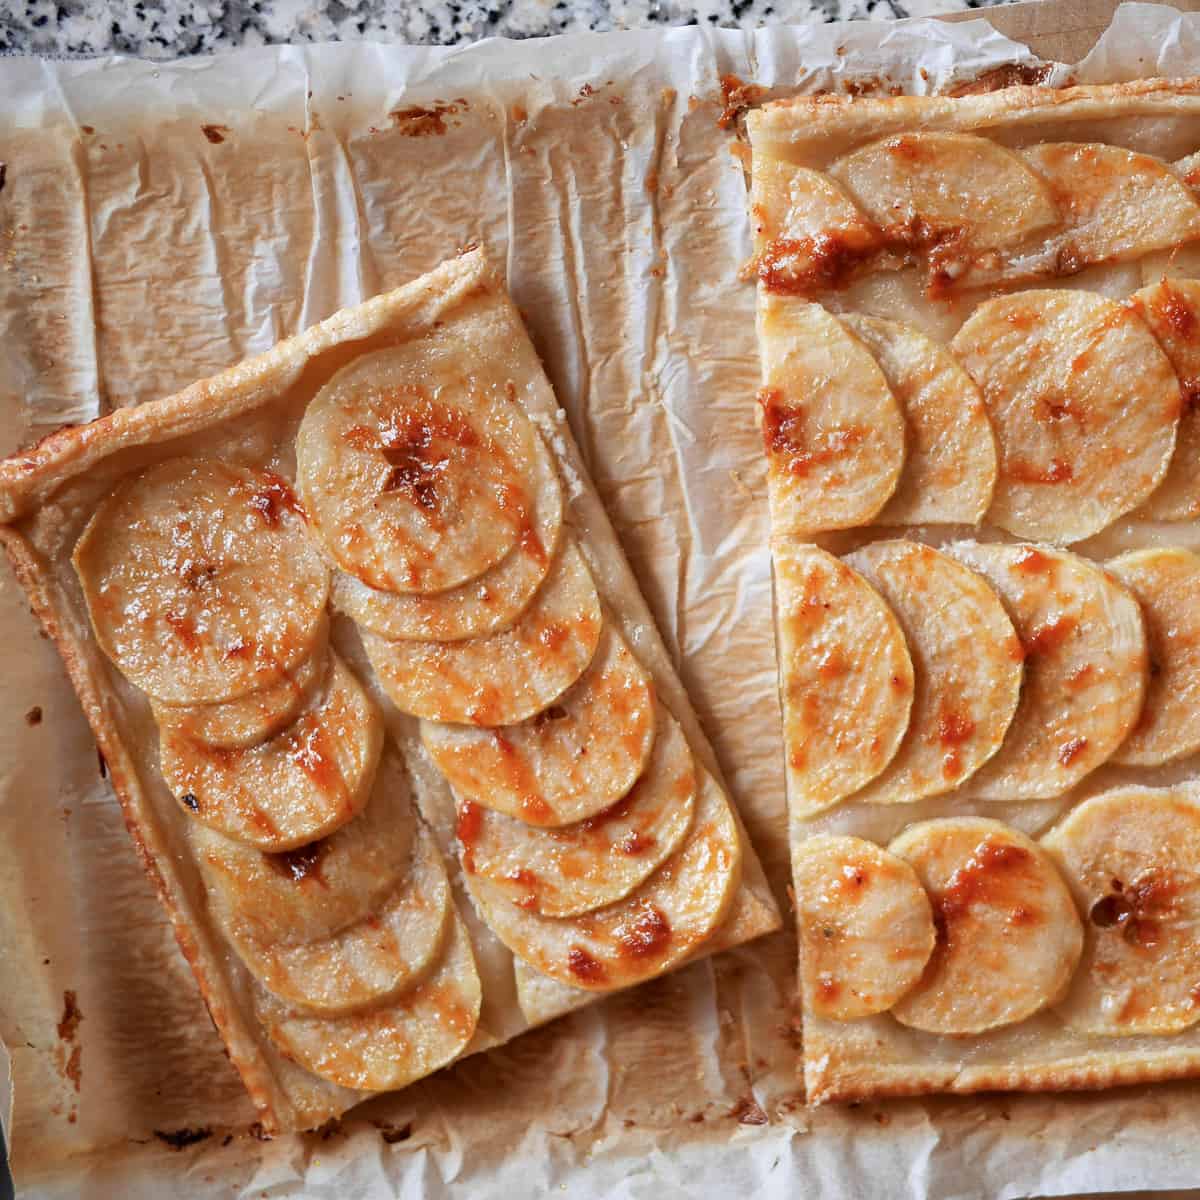 Slices of vegan French apple tart